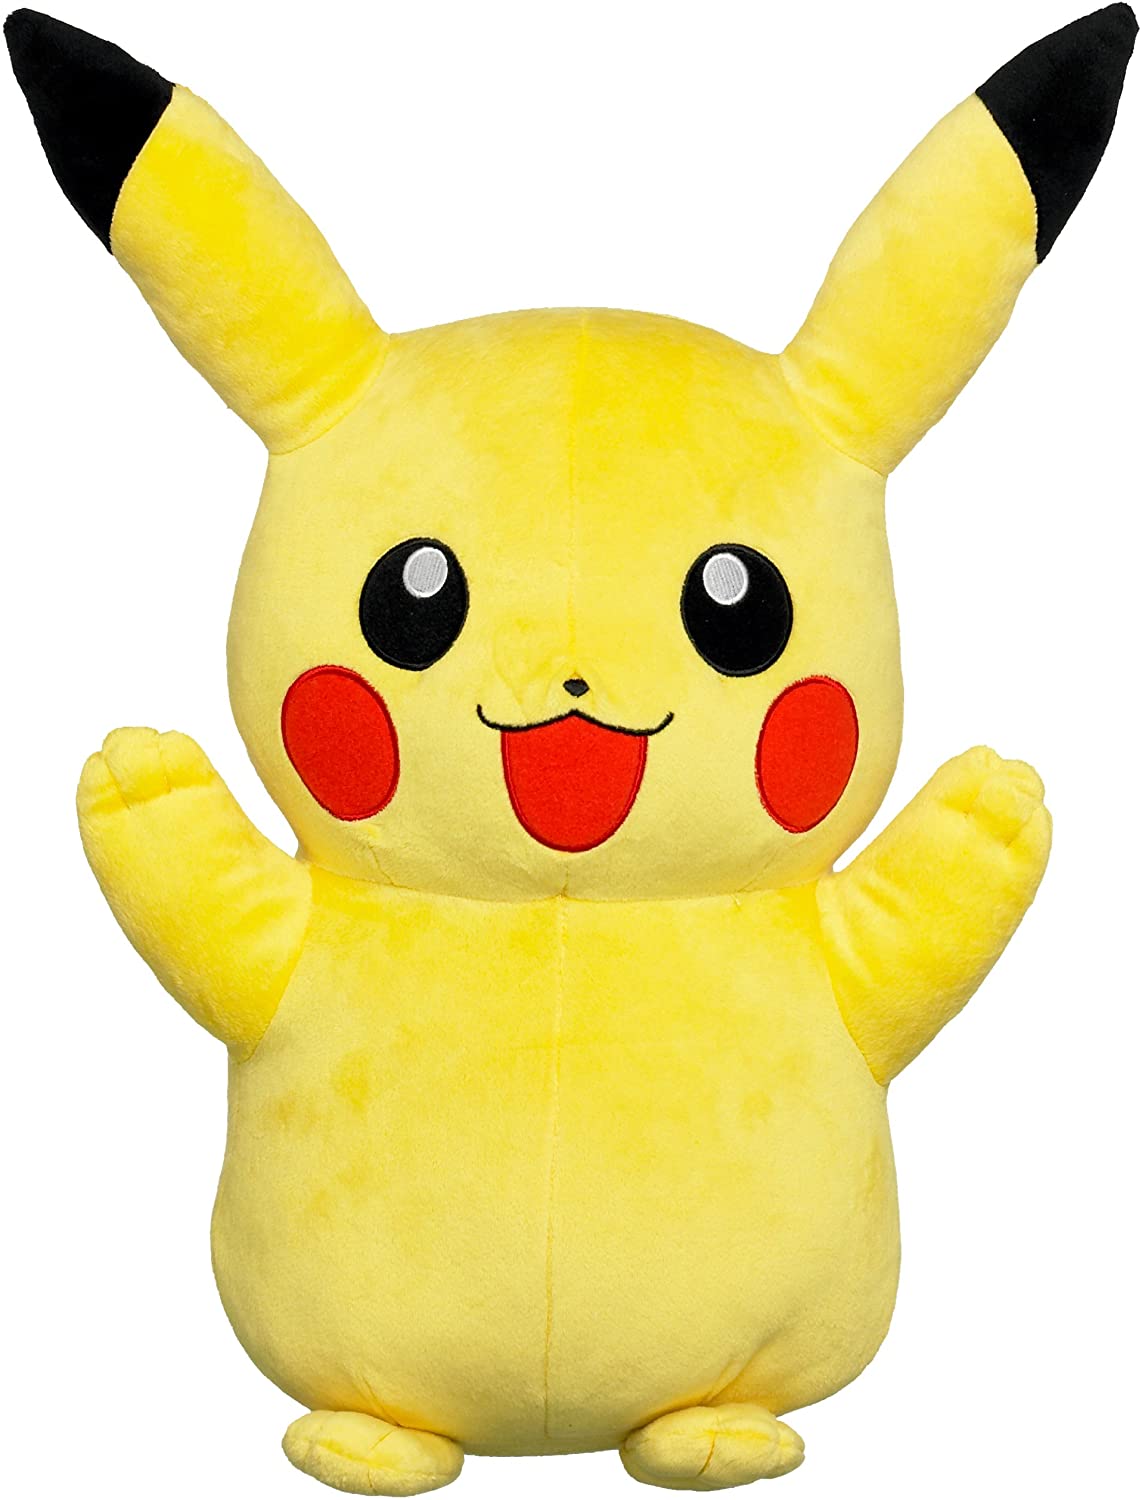 Tomy Pikachu Plüsch hochwertiges Pokémon Stofftier 20 cm zum spielen kuscheln 